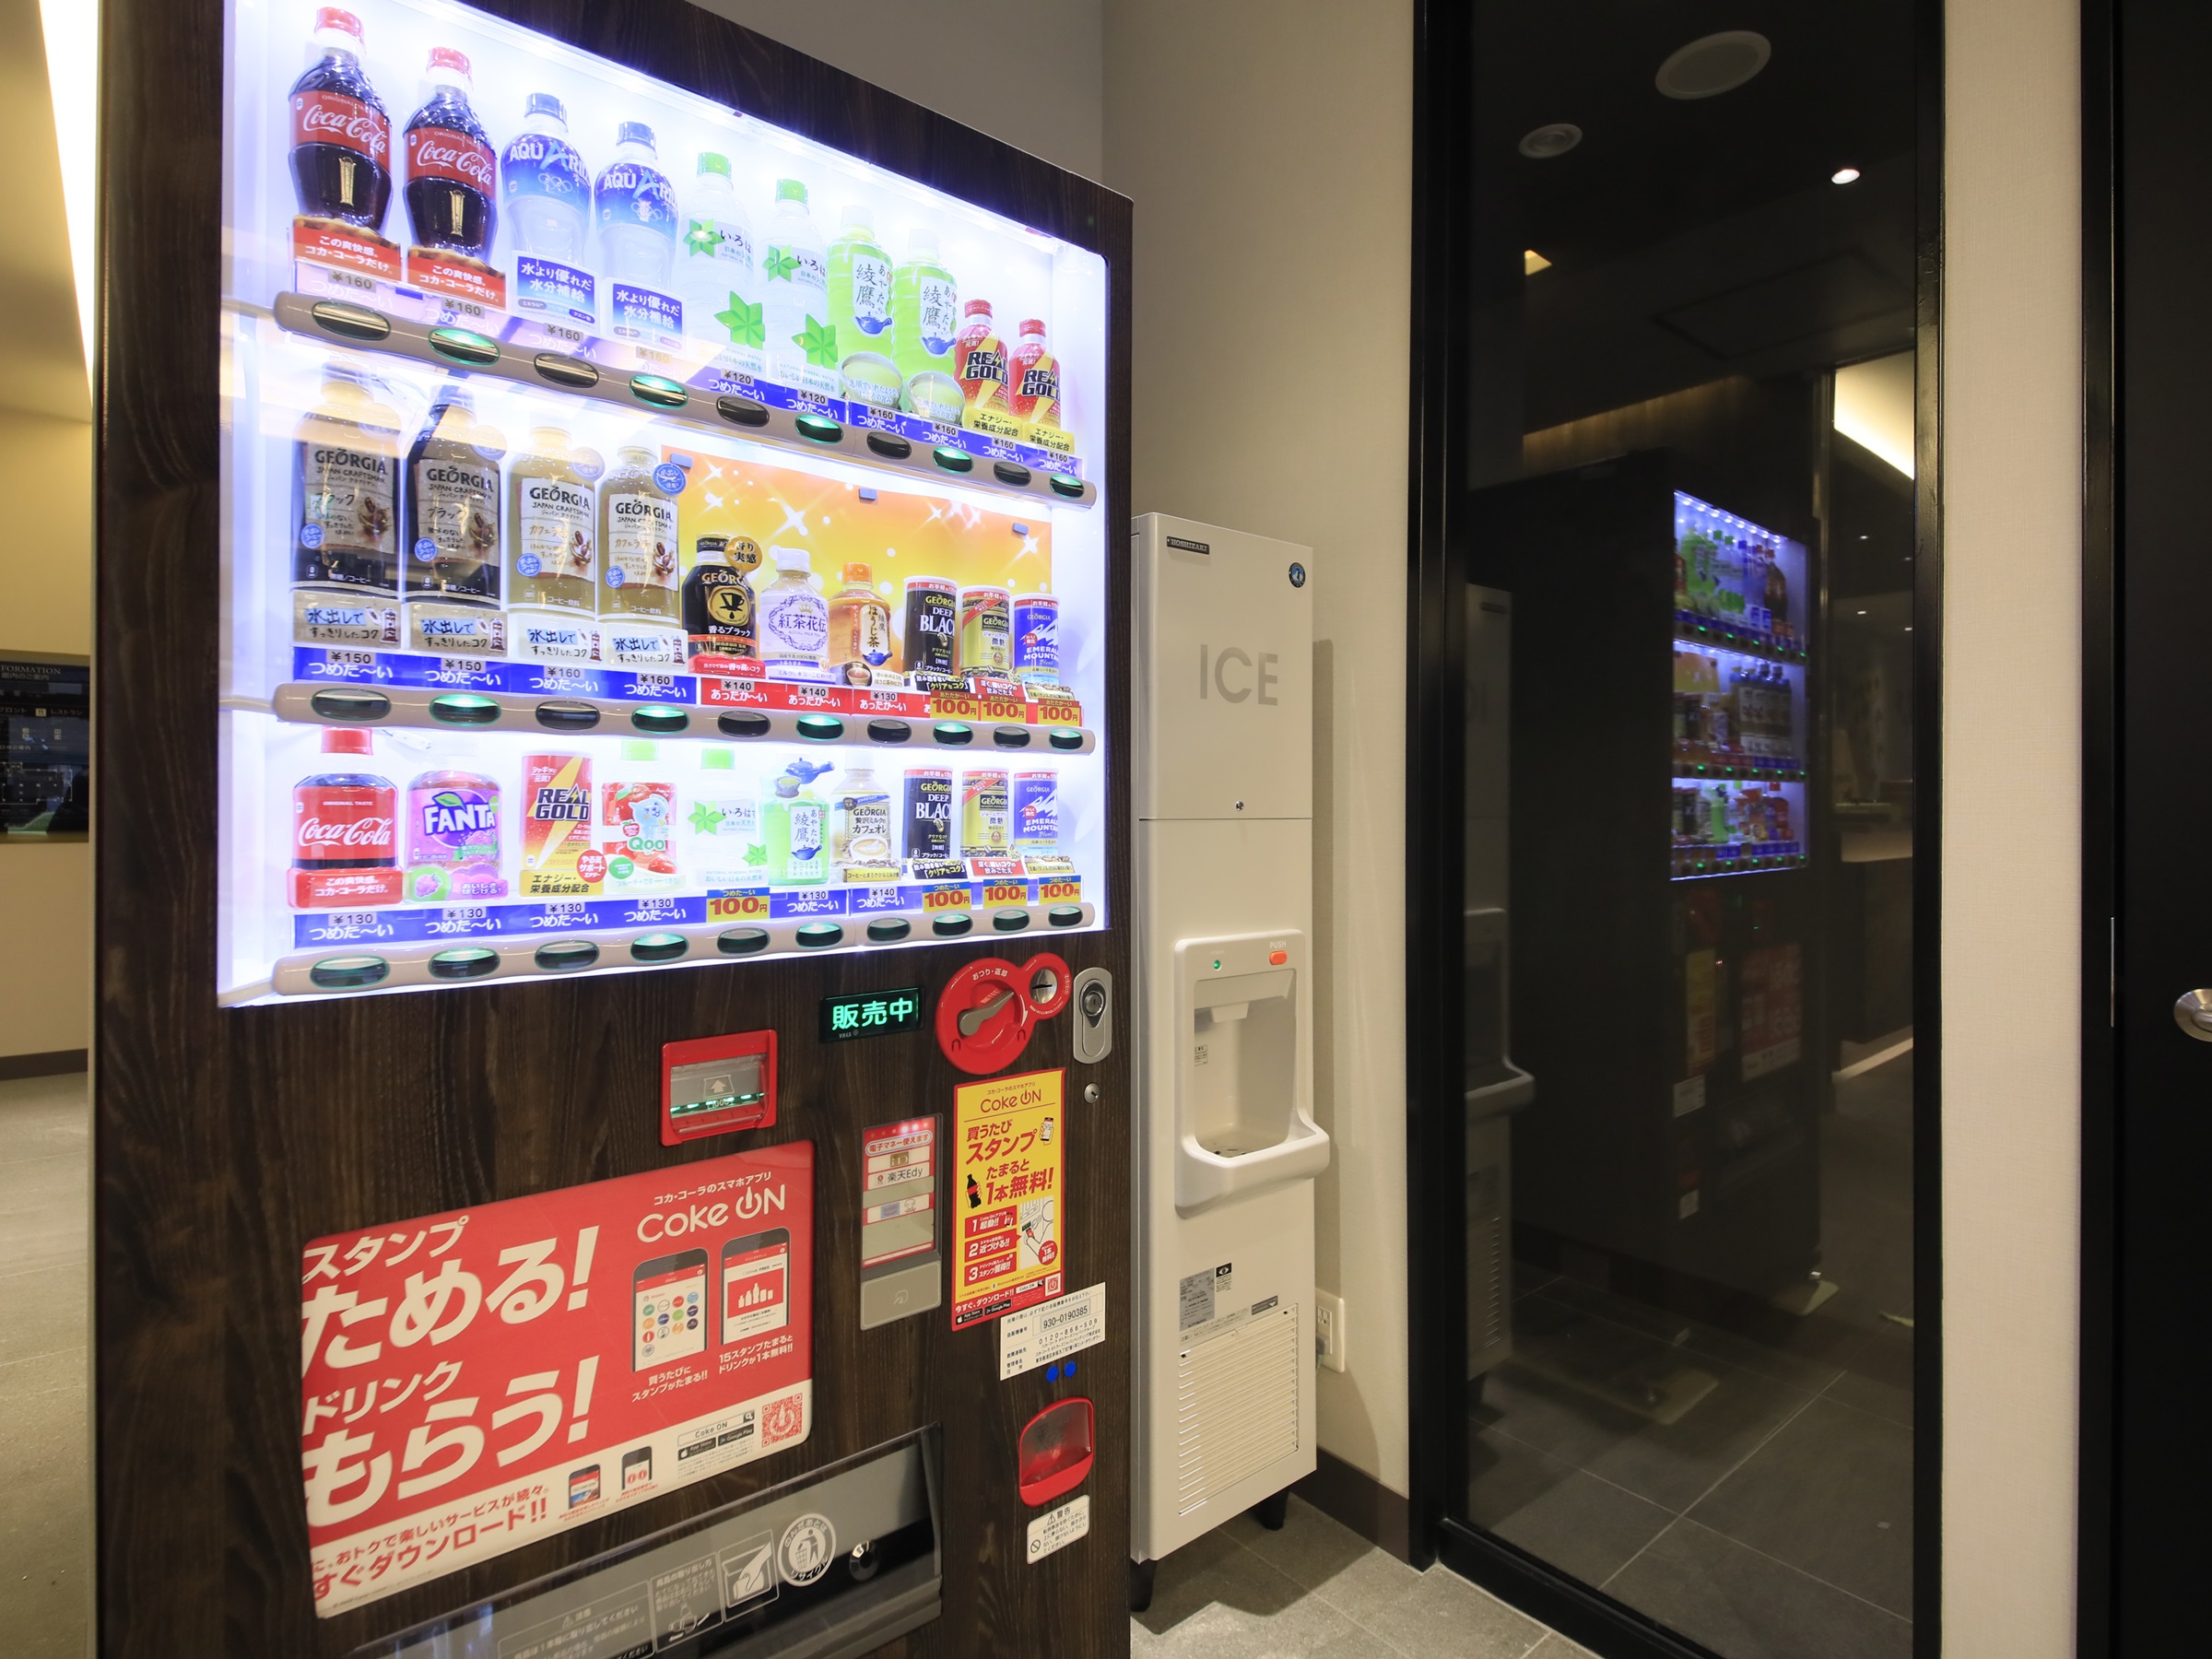 自動販売機 / Vending machine